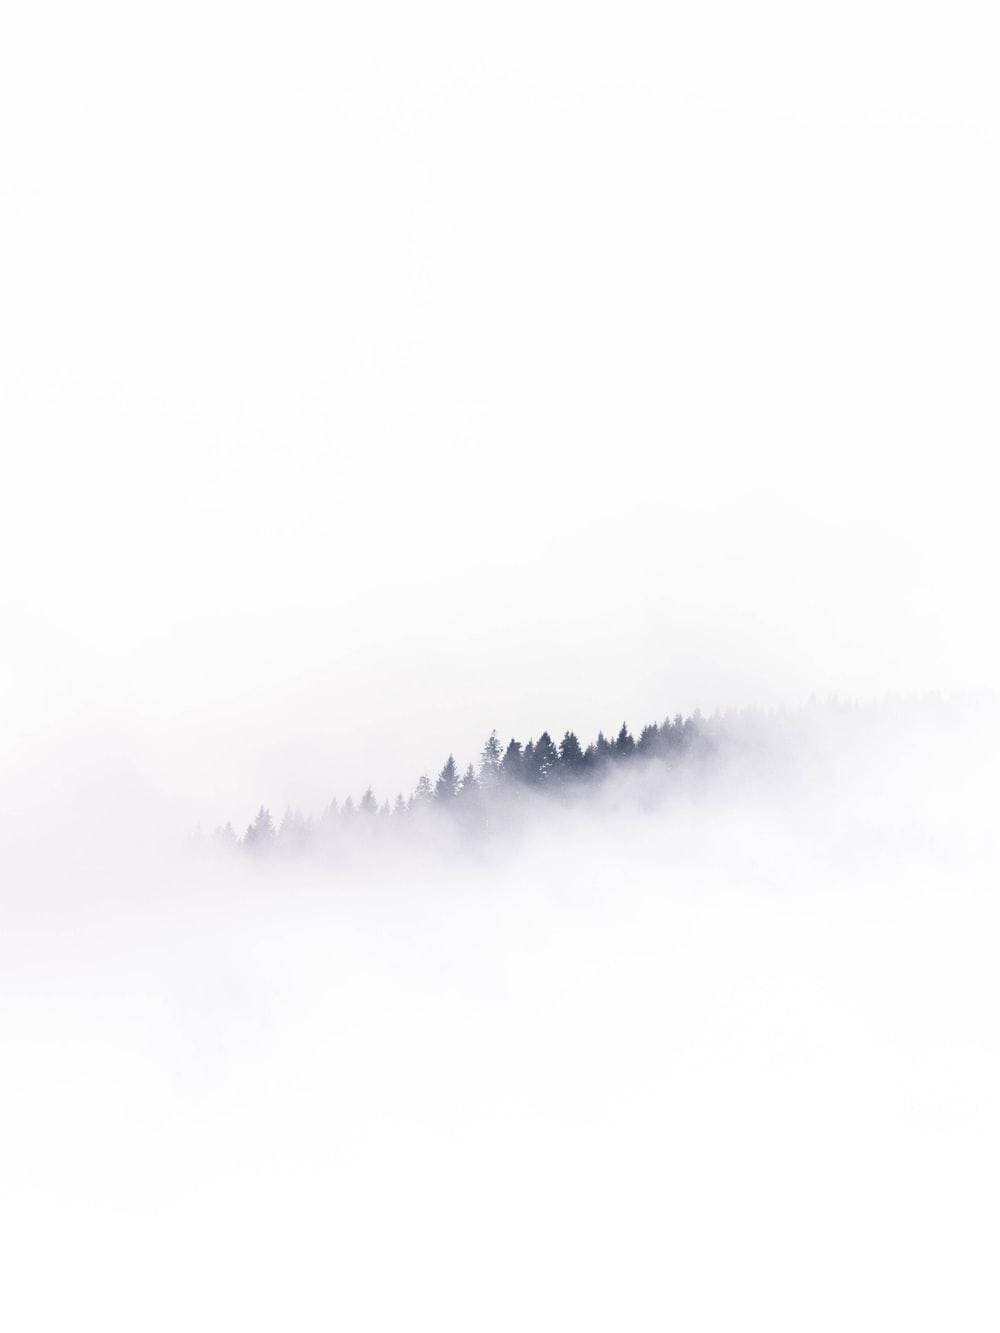 Blank White Trees In Fog Wallpaper